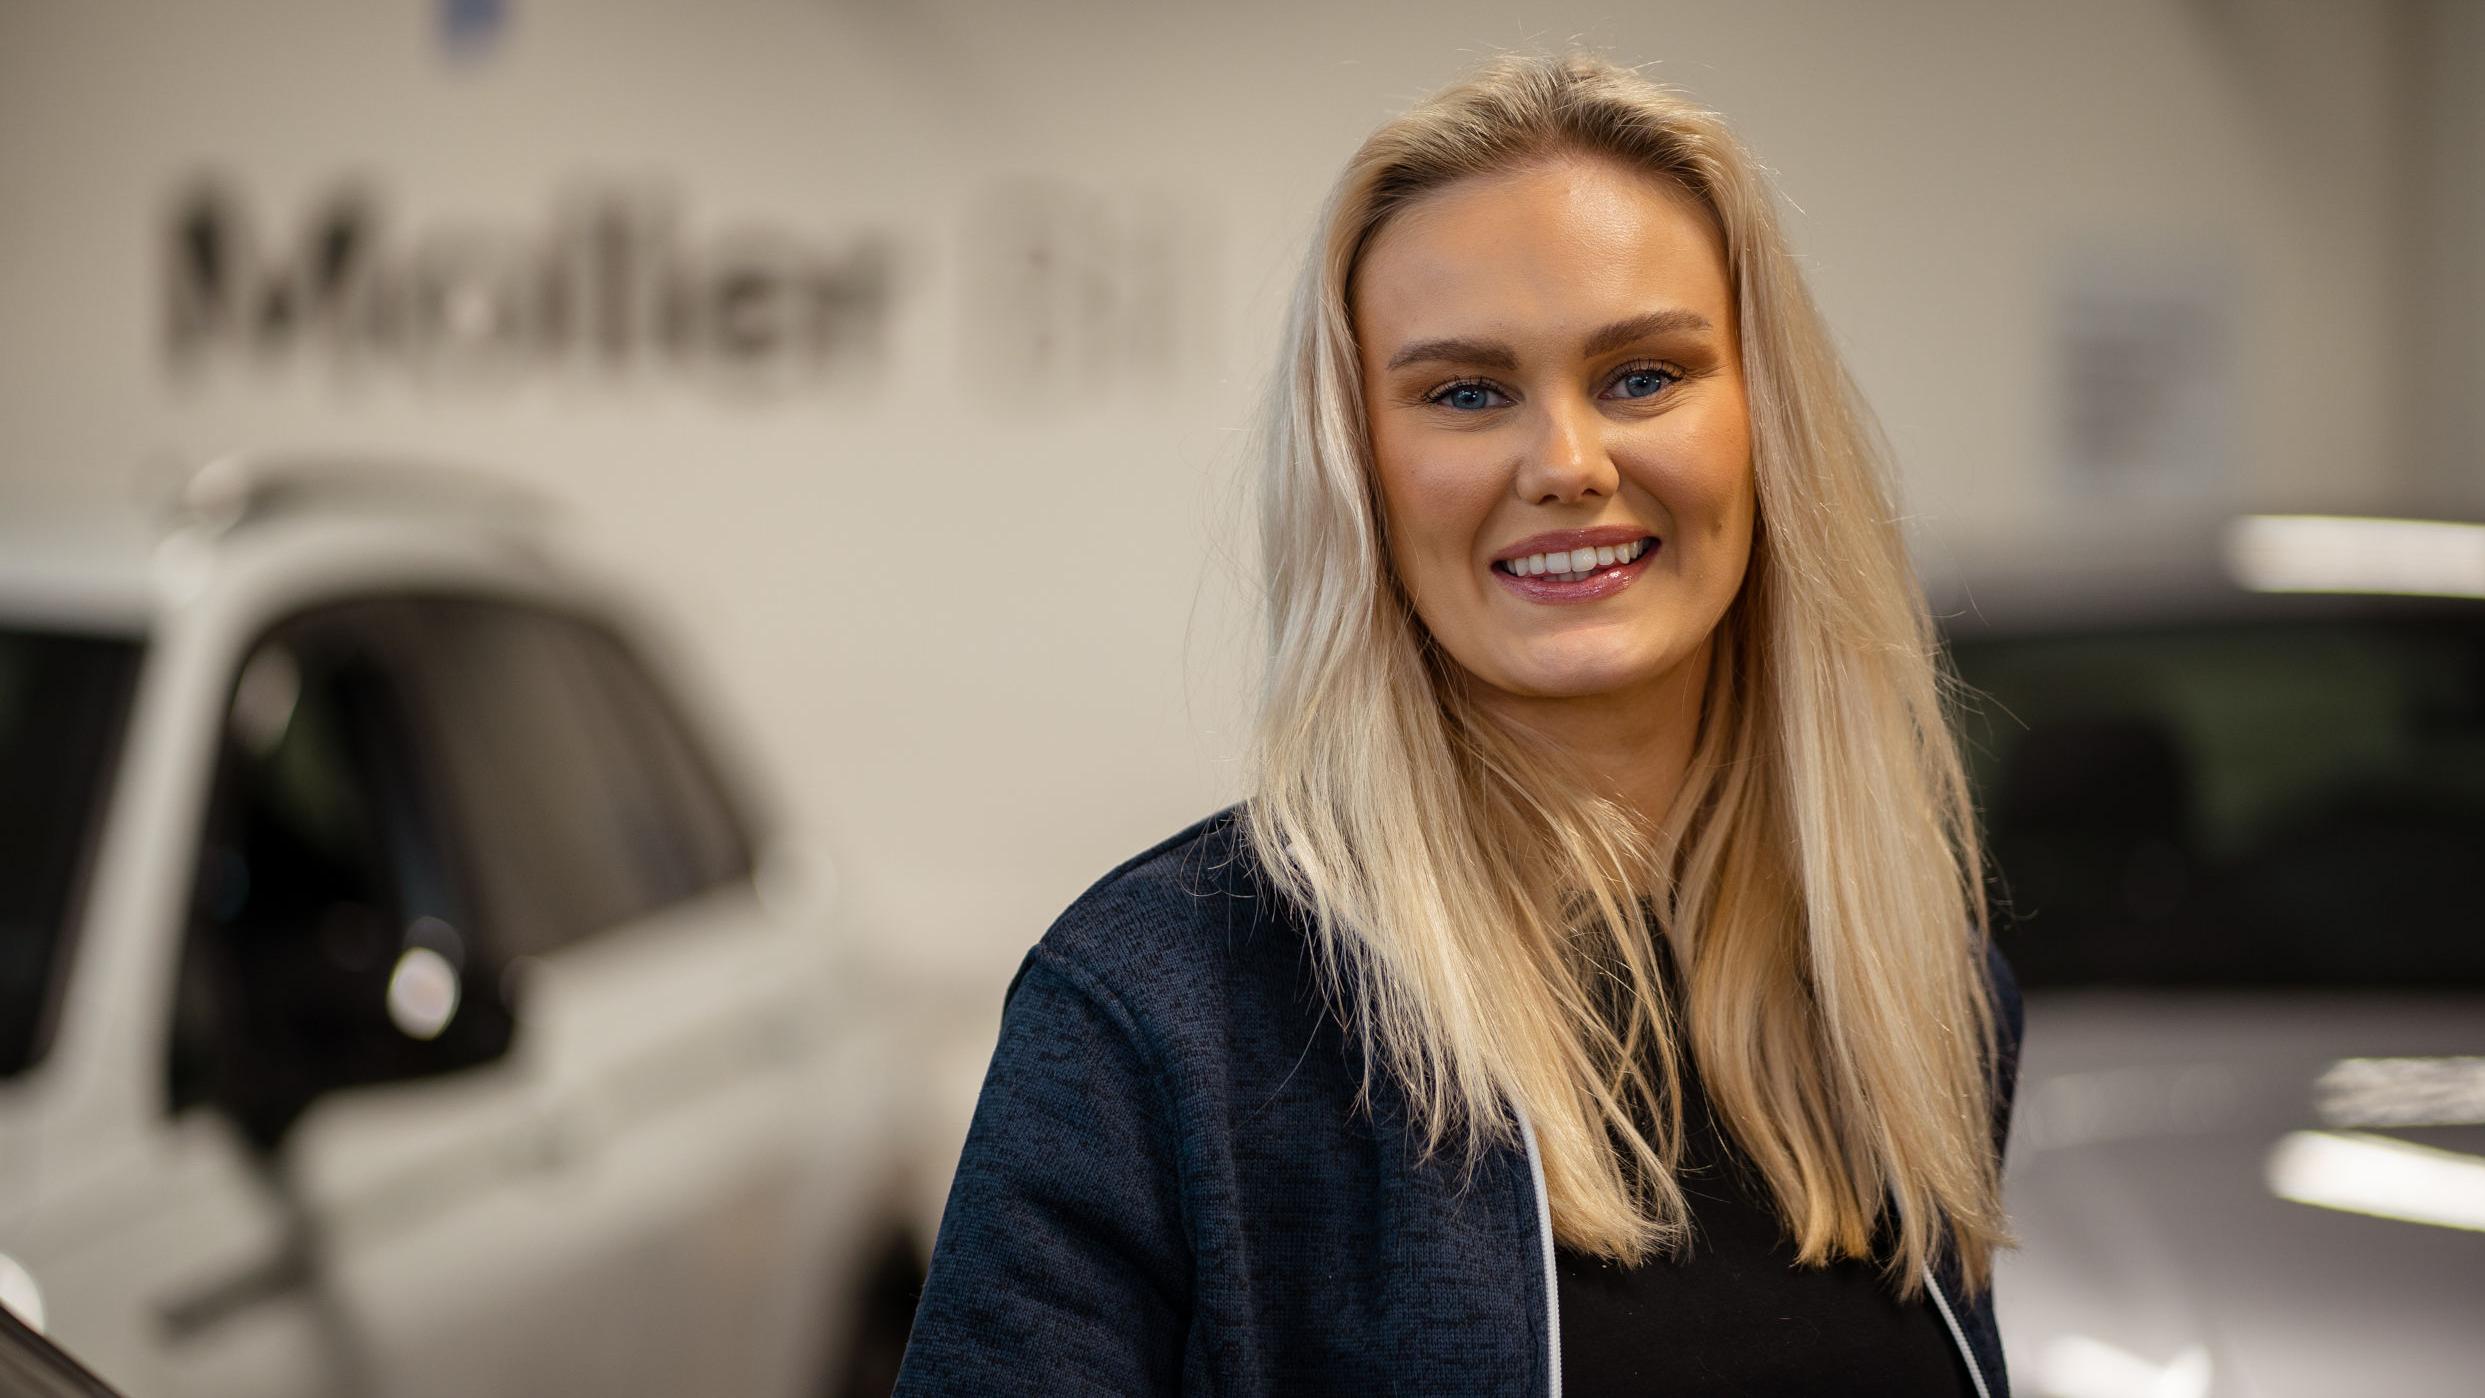 Kvinnelig Møller Bil ansatt på bruktbil som smiler